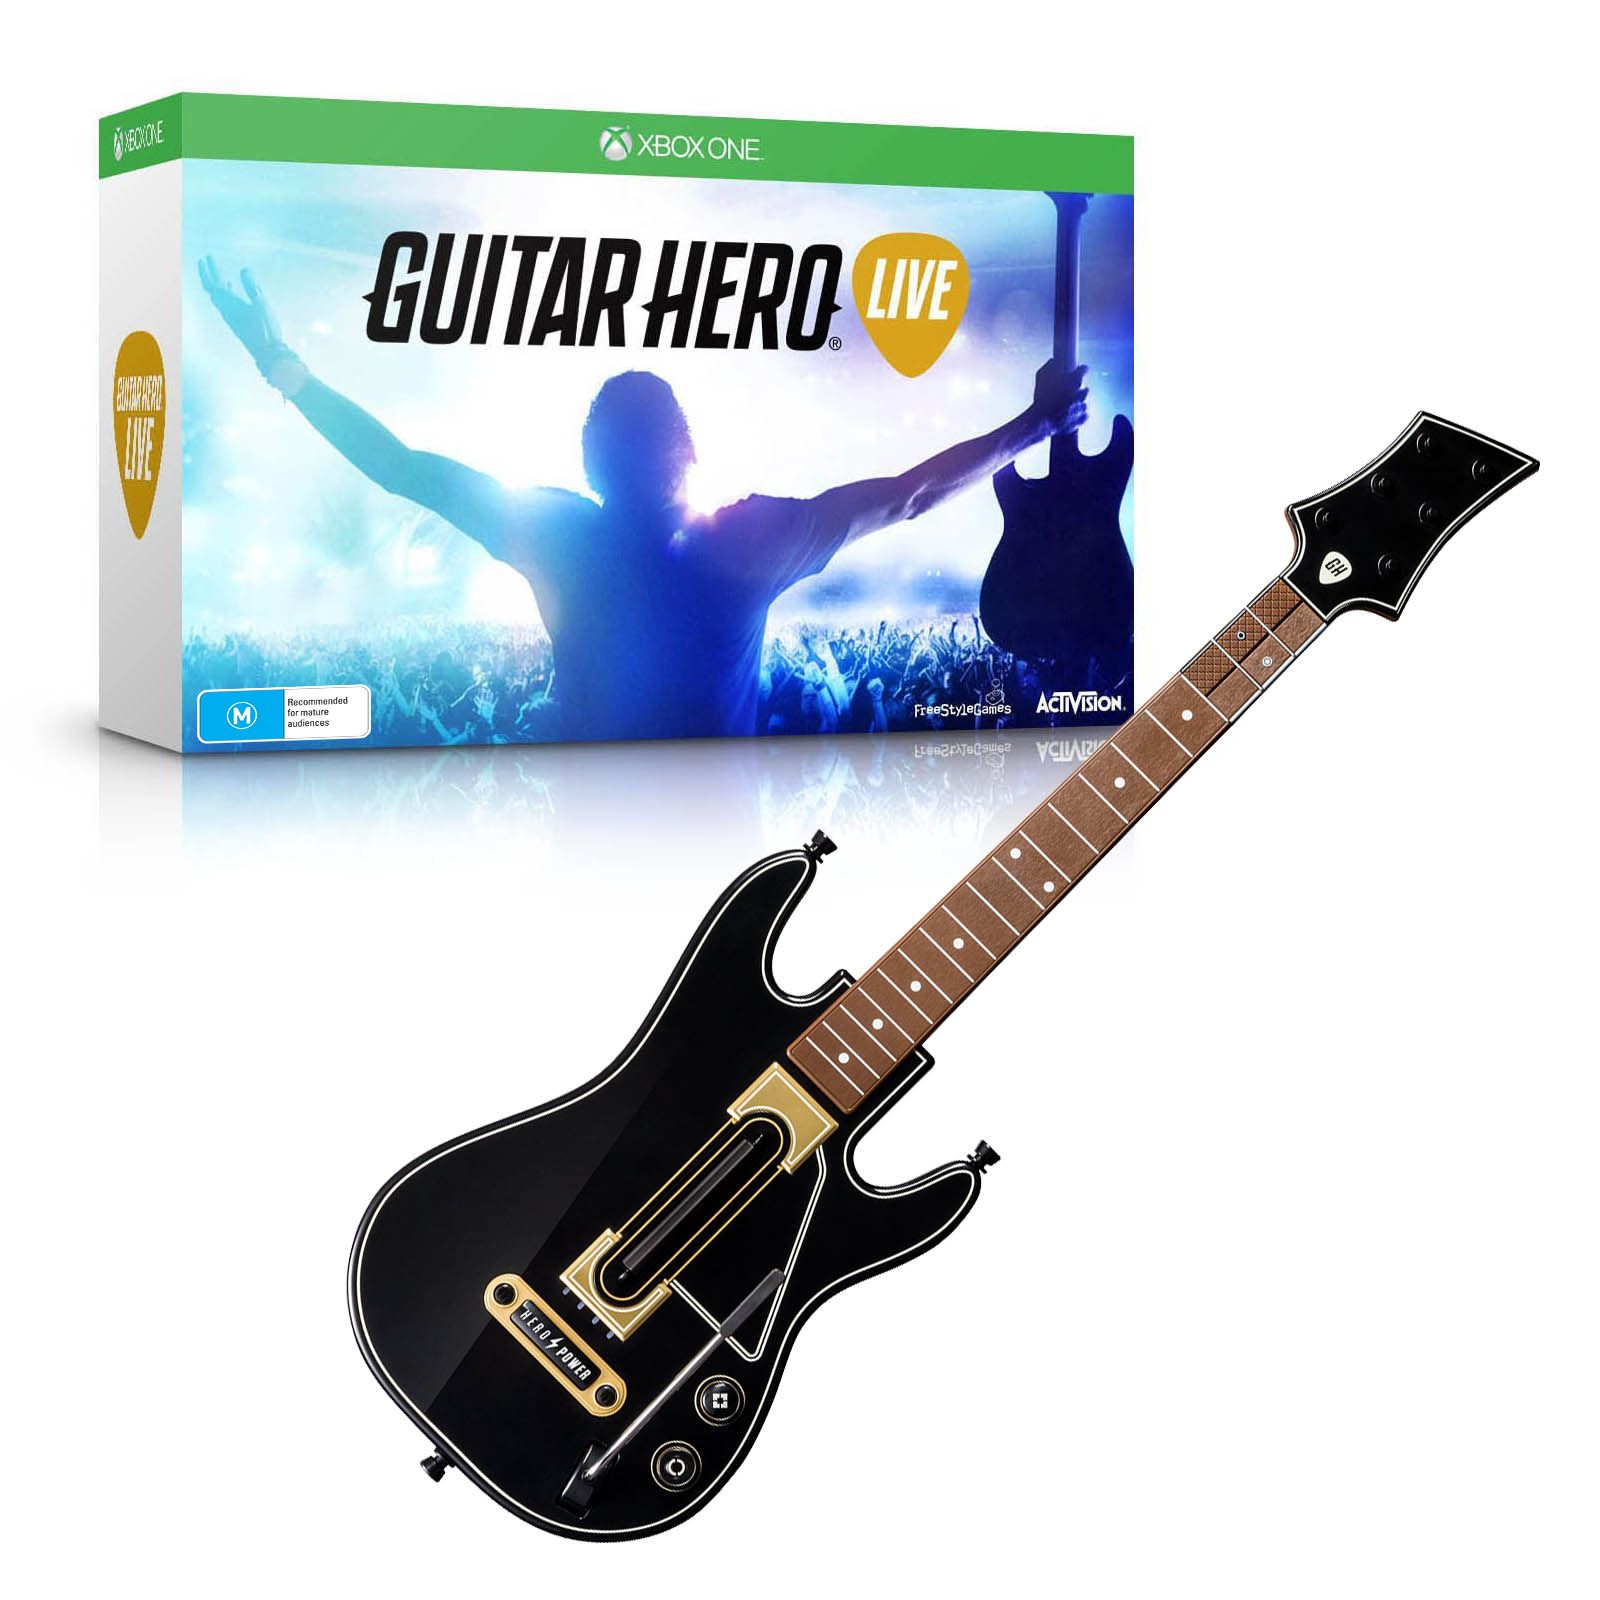 Buy Guitar Hero Game Online at $5995 - Joystix Games